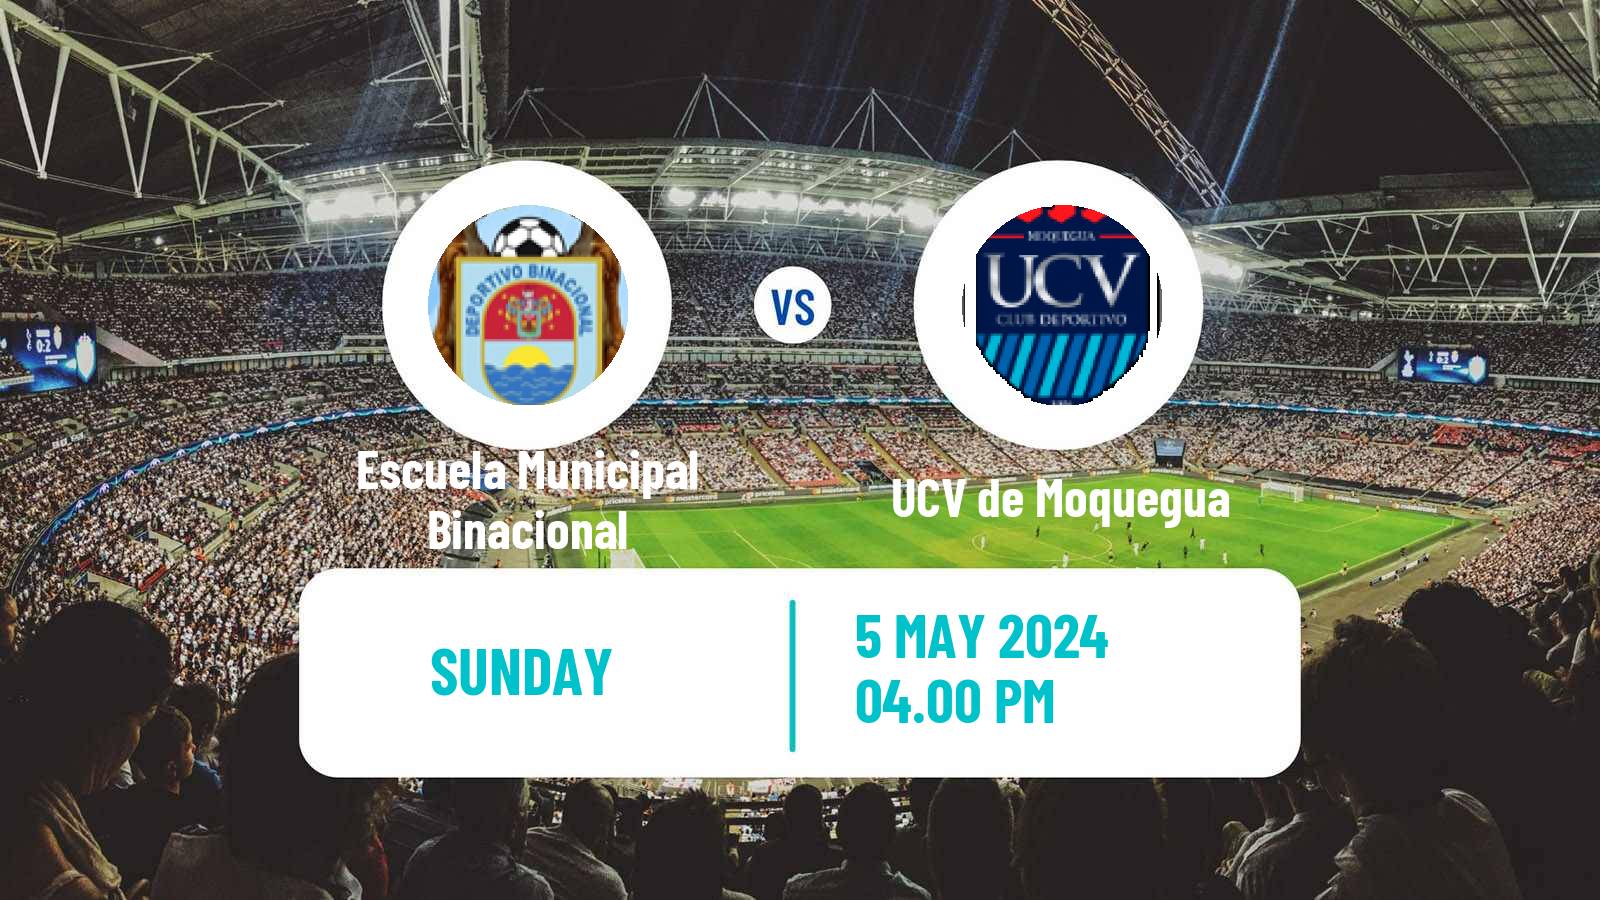 Soccer Peruvian Liga 2 Escuela Municipal Binacional - UCV de Moquegua